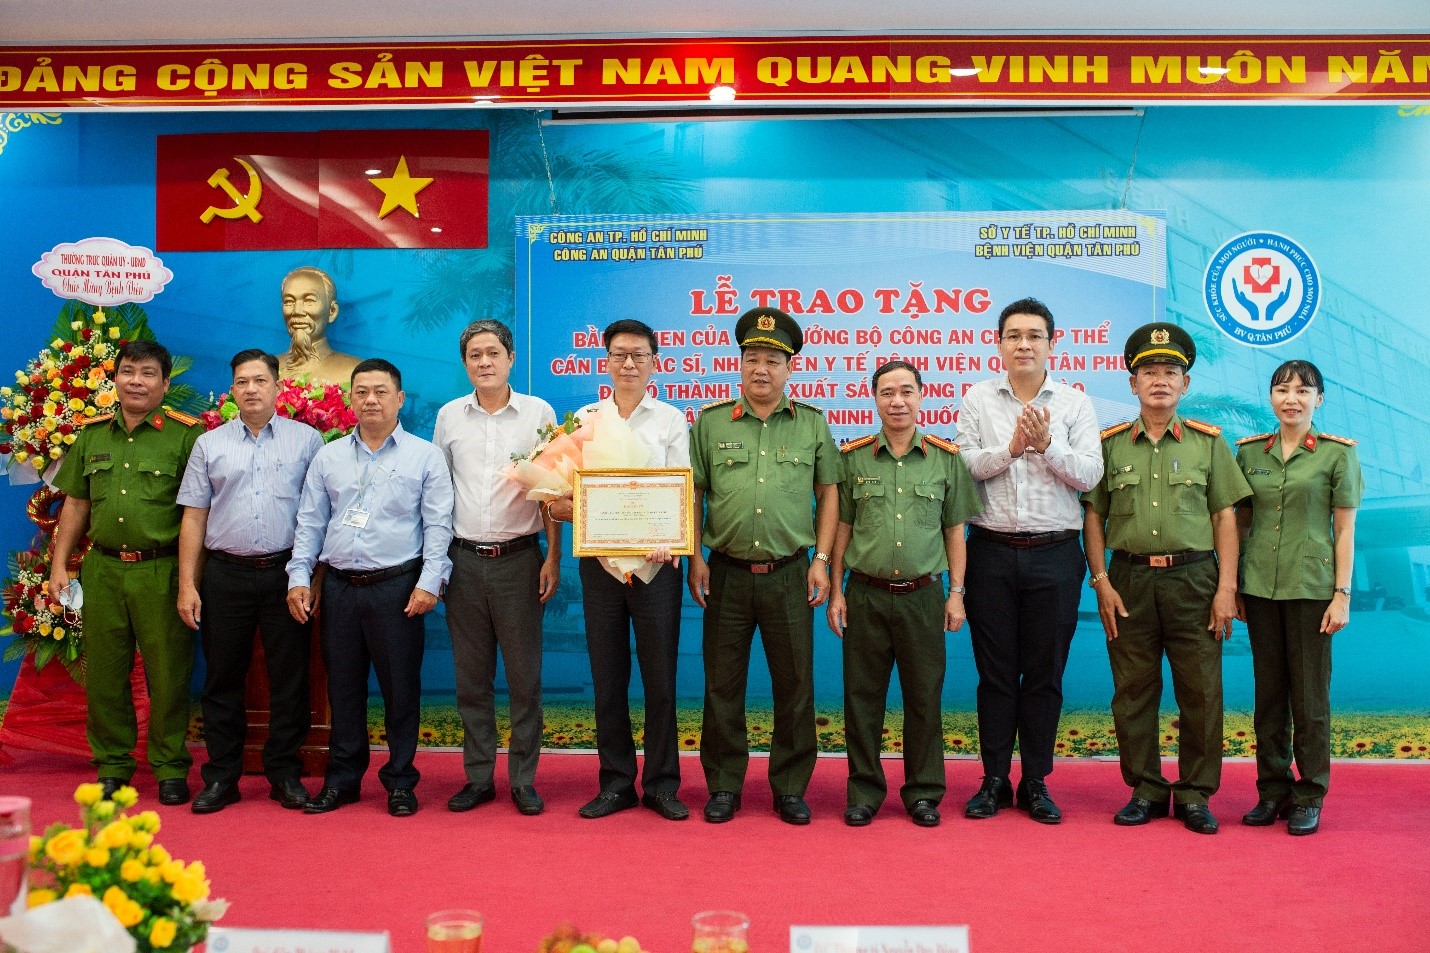 Bệnh viện quận Tân Phú vinh dự đón nhận bằng khen của Bộ Trưởng Bộ Công an trong phong trào “Toàn dân bảo vệ an ninh tổ quốc năm 2021”